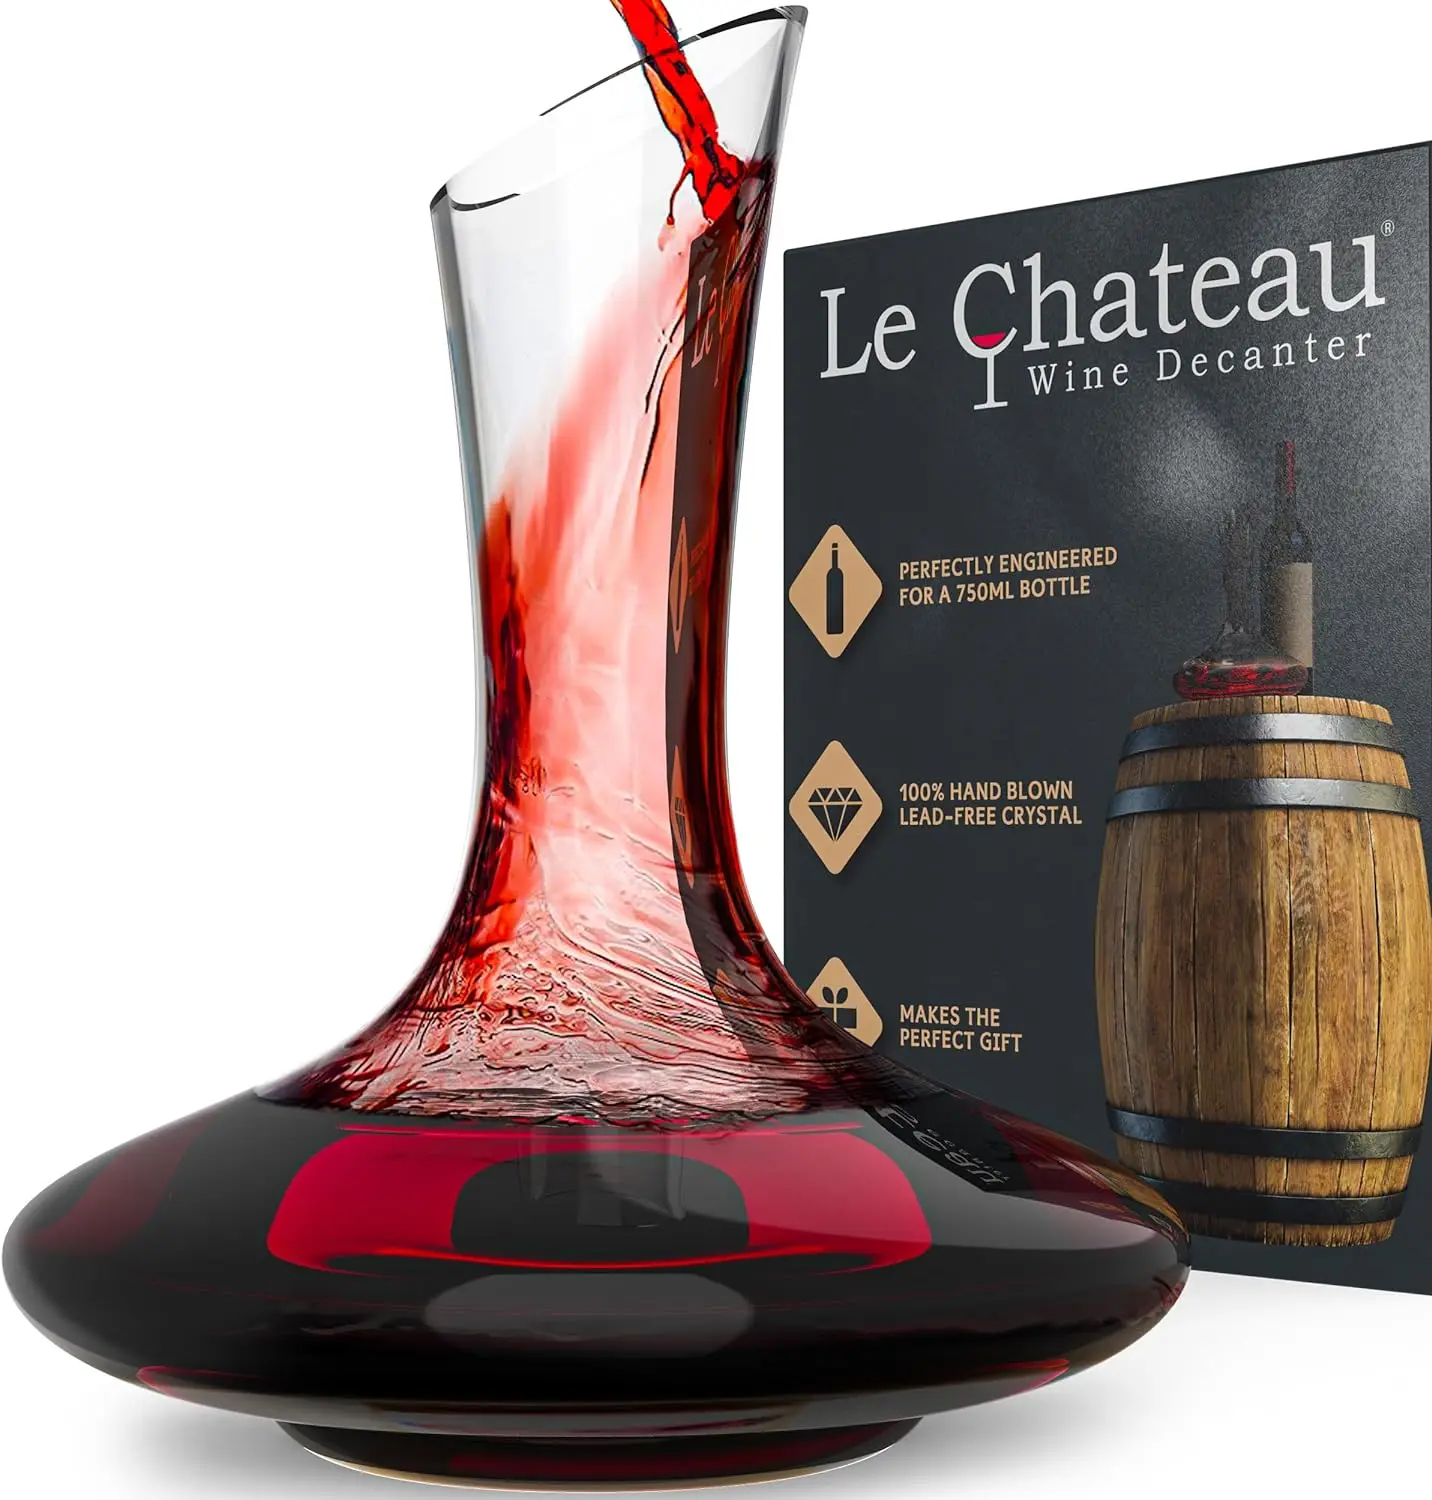 

Le Chateau Декантер для красного вина-Ручная выдувка, бессвинцовый Хрустальный графин и винный аэратор-полная бутылка (750 мл) вина